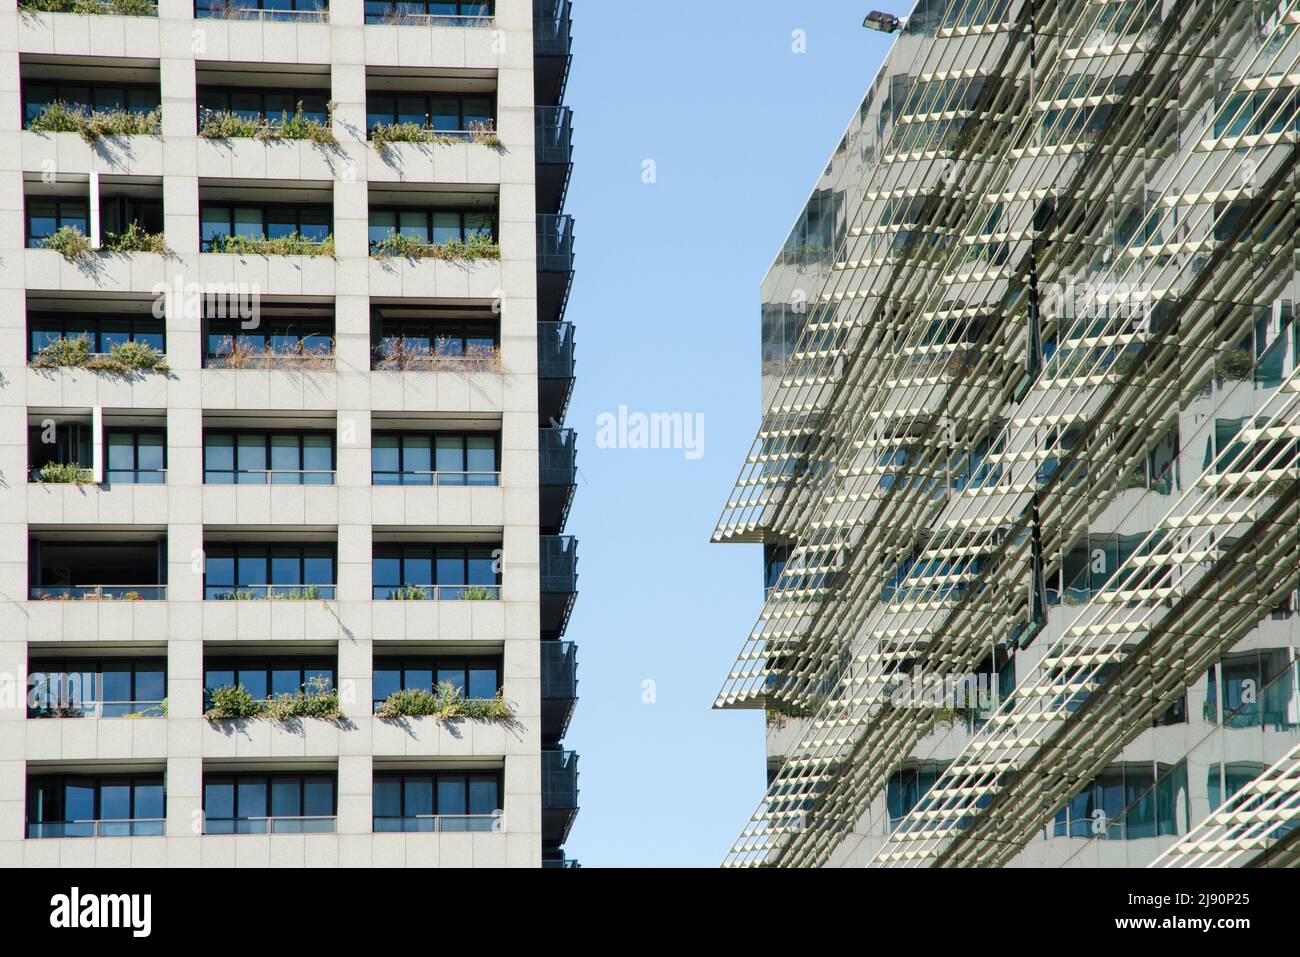 Edifici moderni in vetro, cemento e acciaio. Uffici e appartamenti in un quartiere degli affari Foto Stock